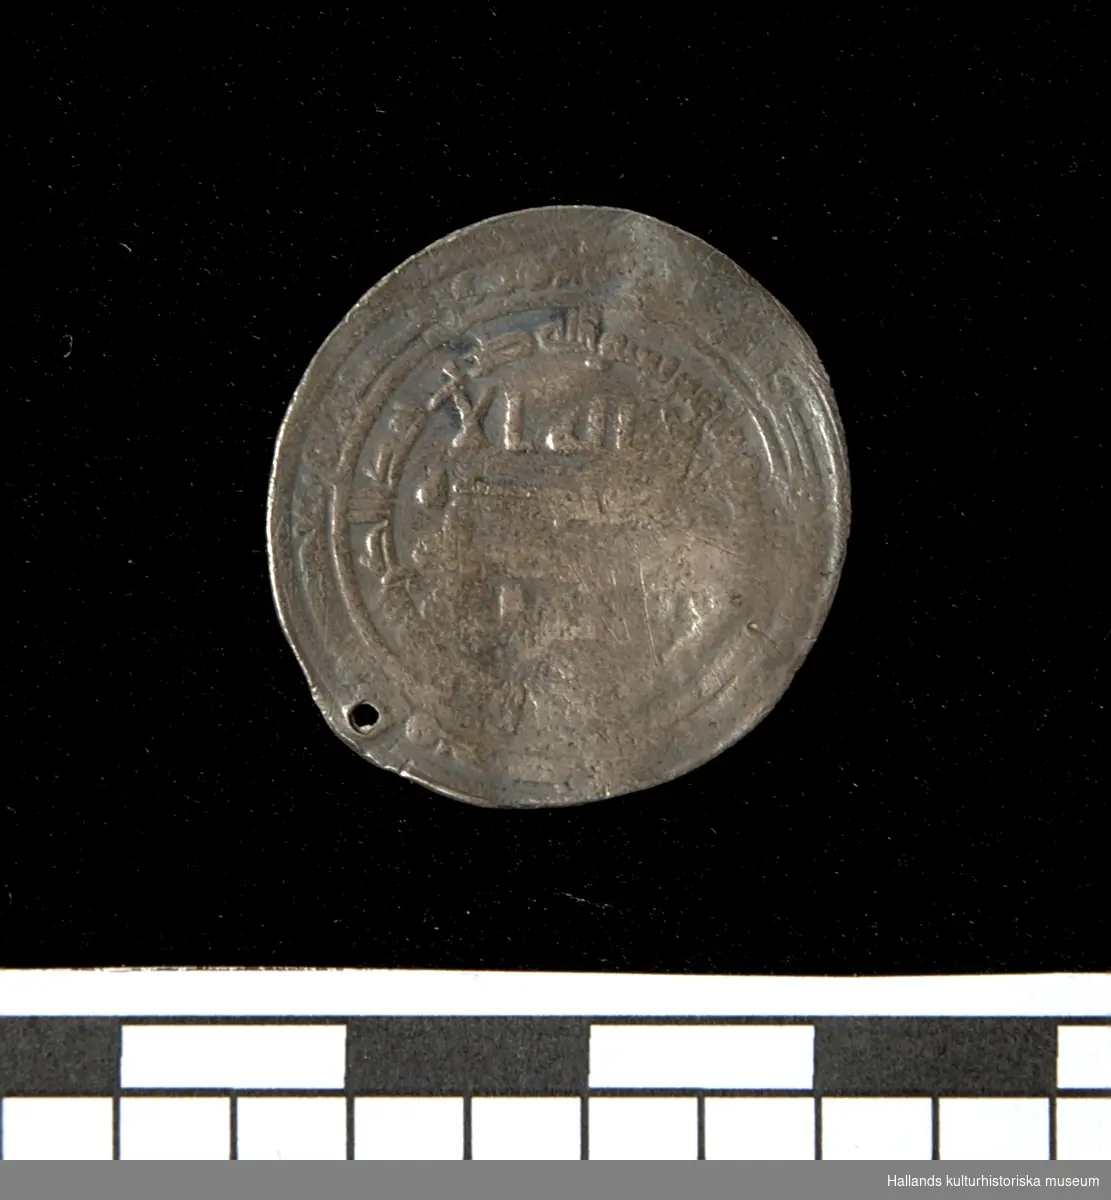 Arabiskt silvermynt (Dirham). Myntet bär ett slaget hål längs kanten. Jordfynd.